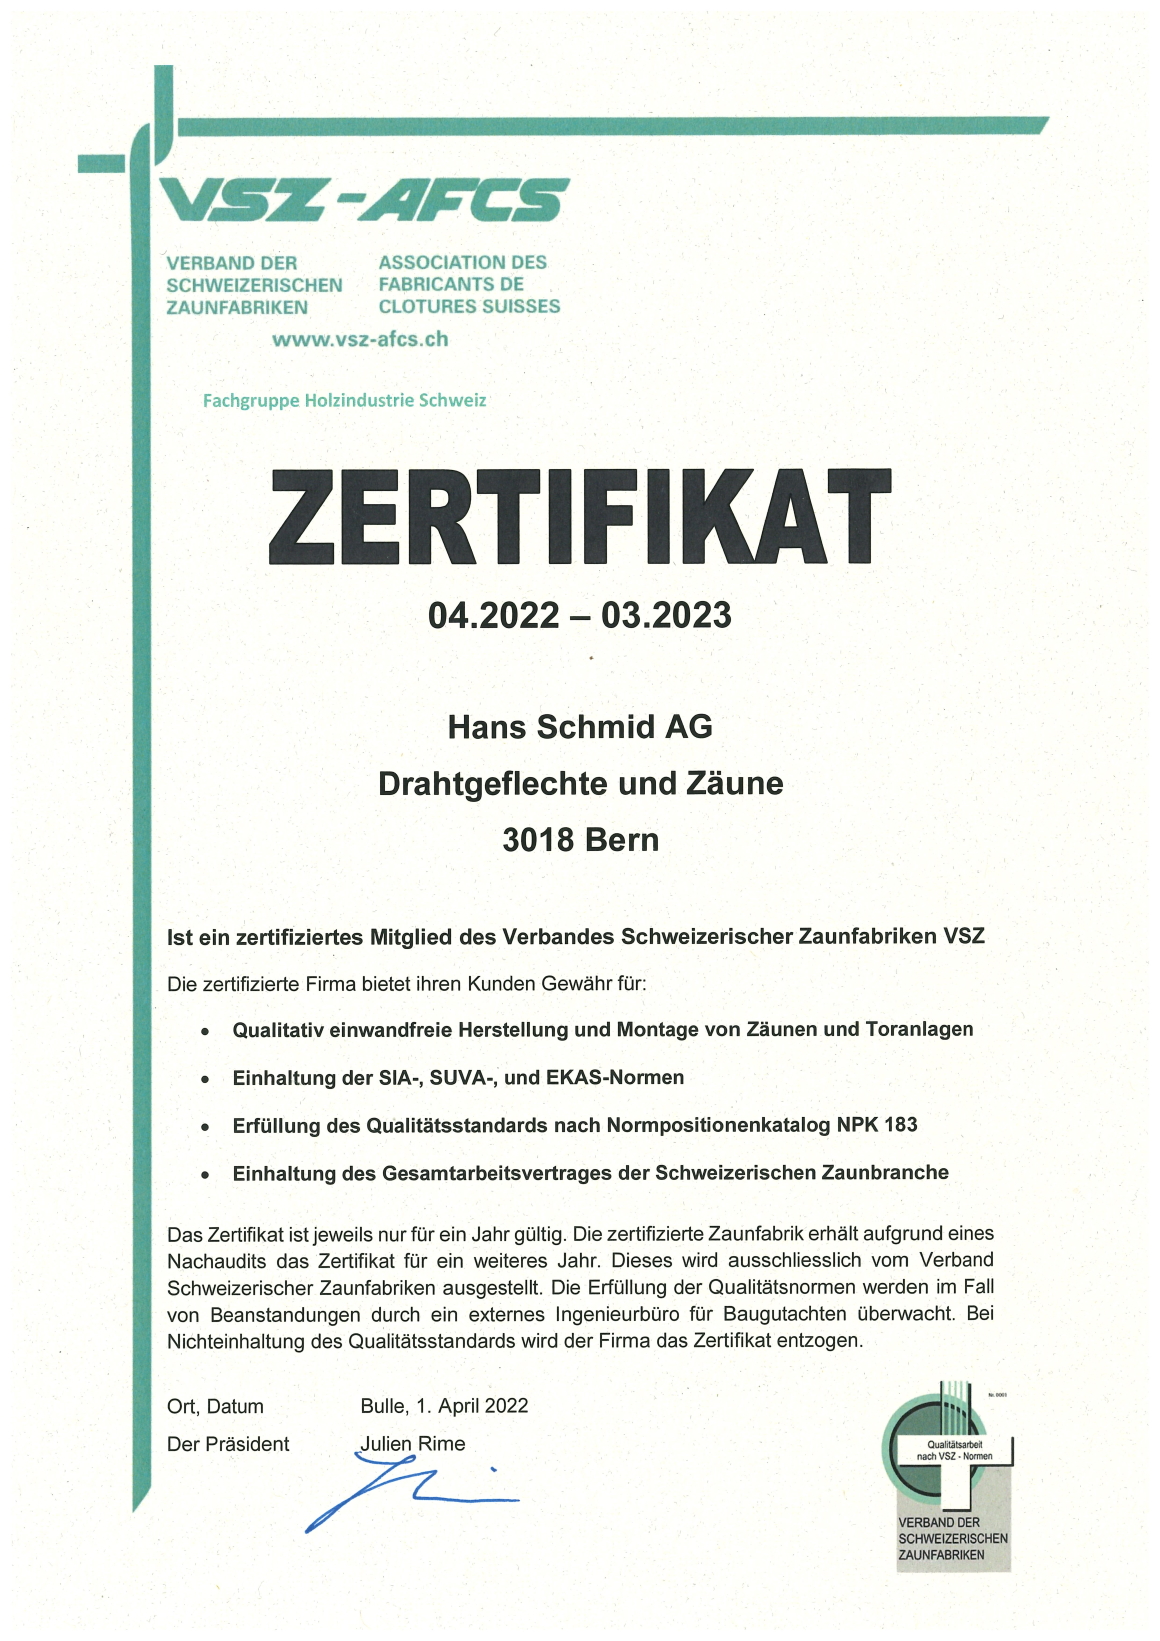 zertifikat-vsz-2022